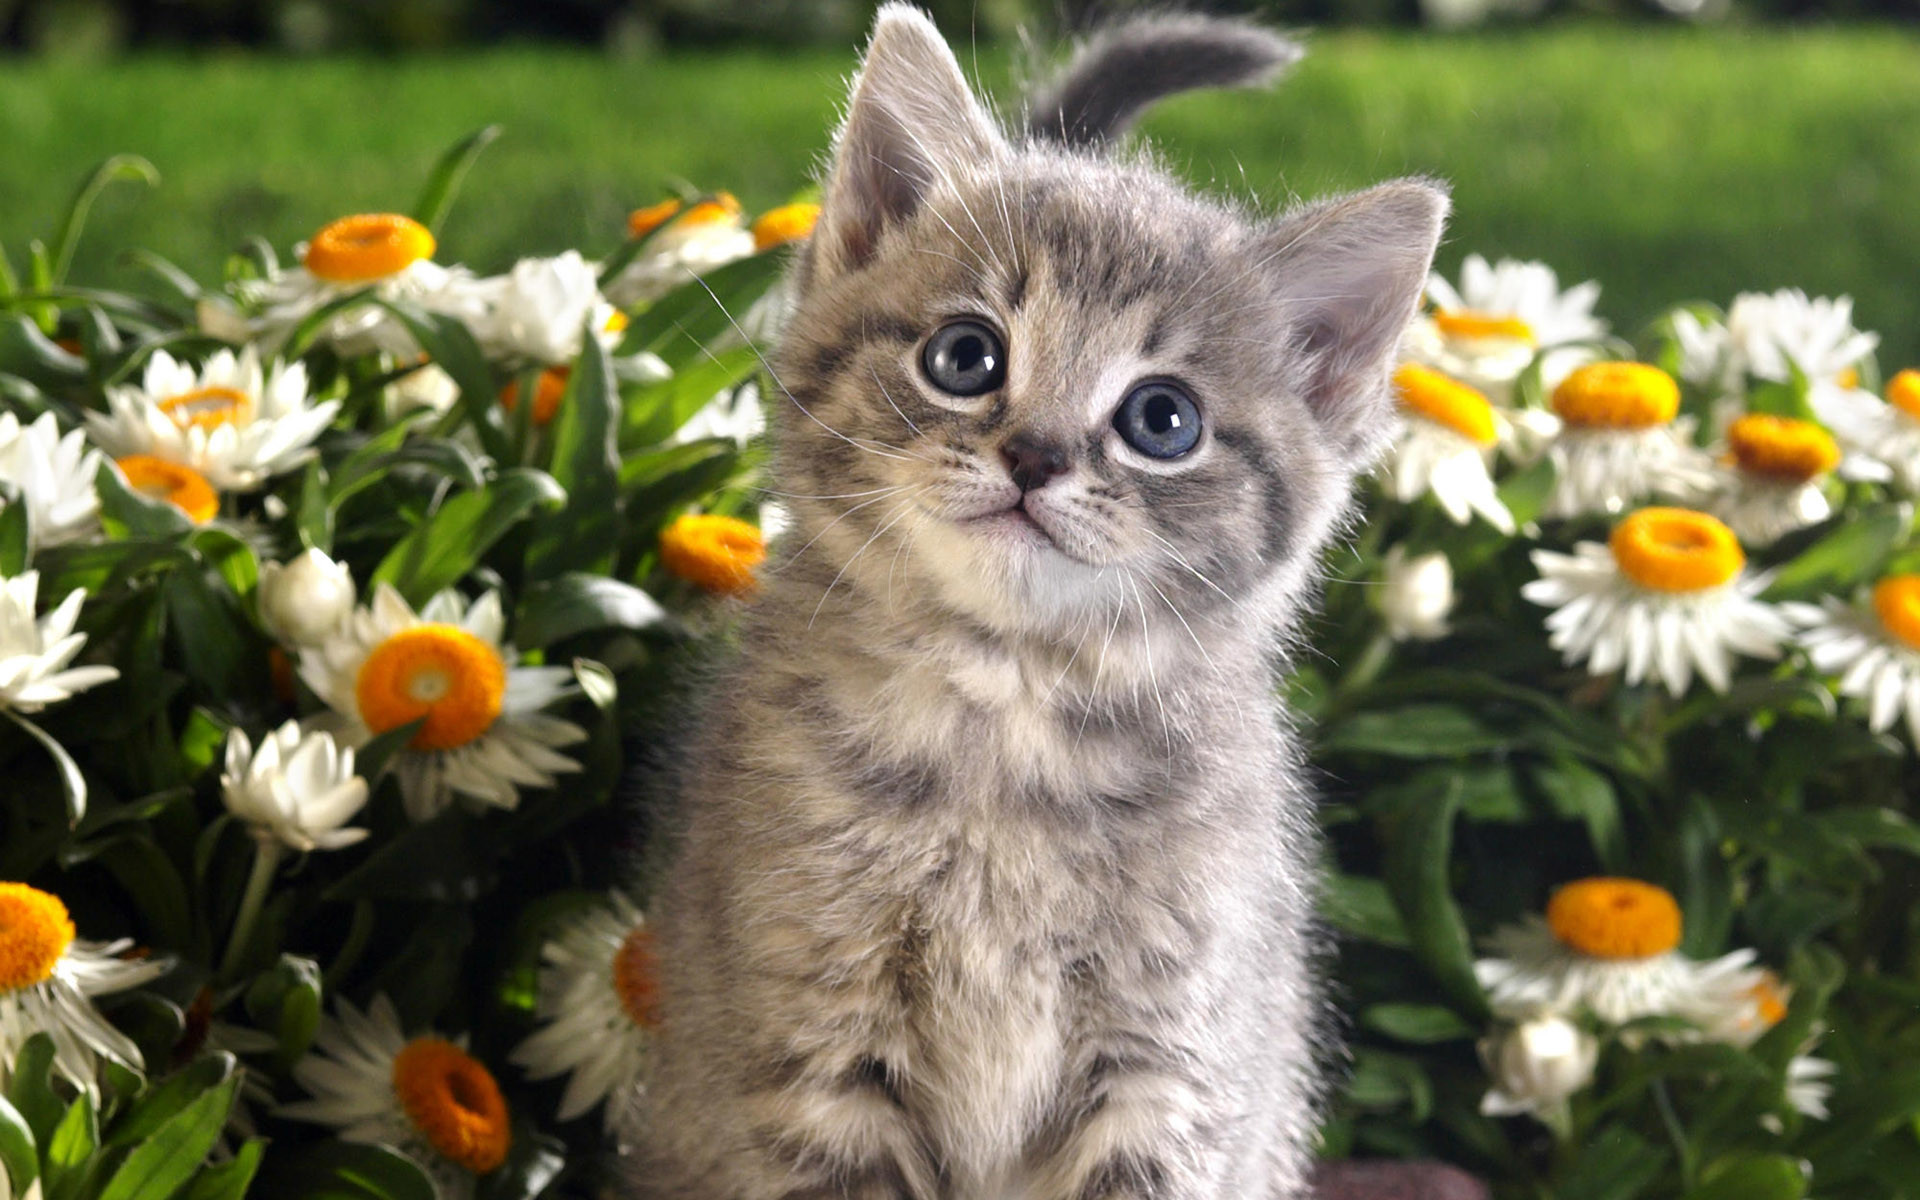 Cute Little Kitten wallpaper wallpaper free download 1280Ã800 Pictures Of  Cute Kittens Wallpapers (